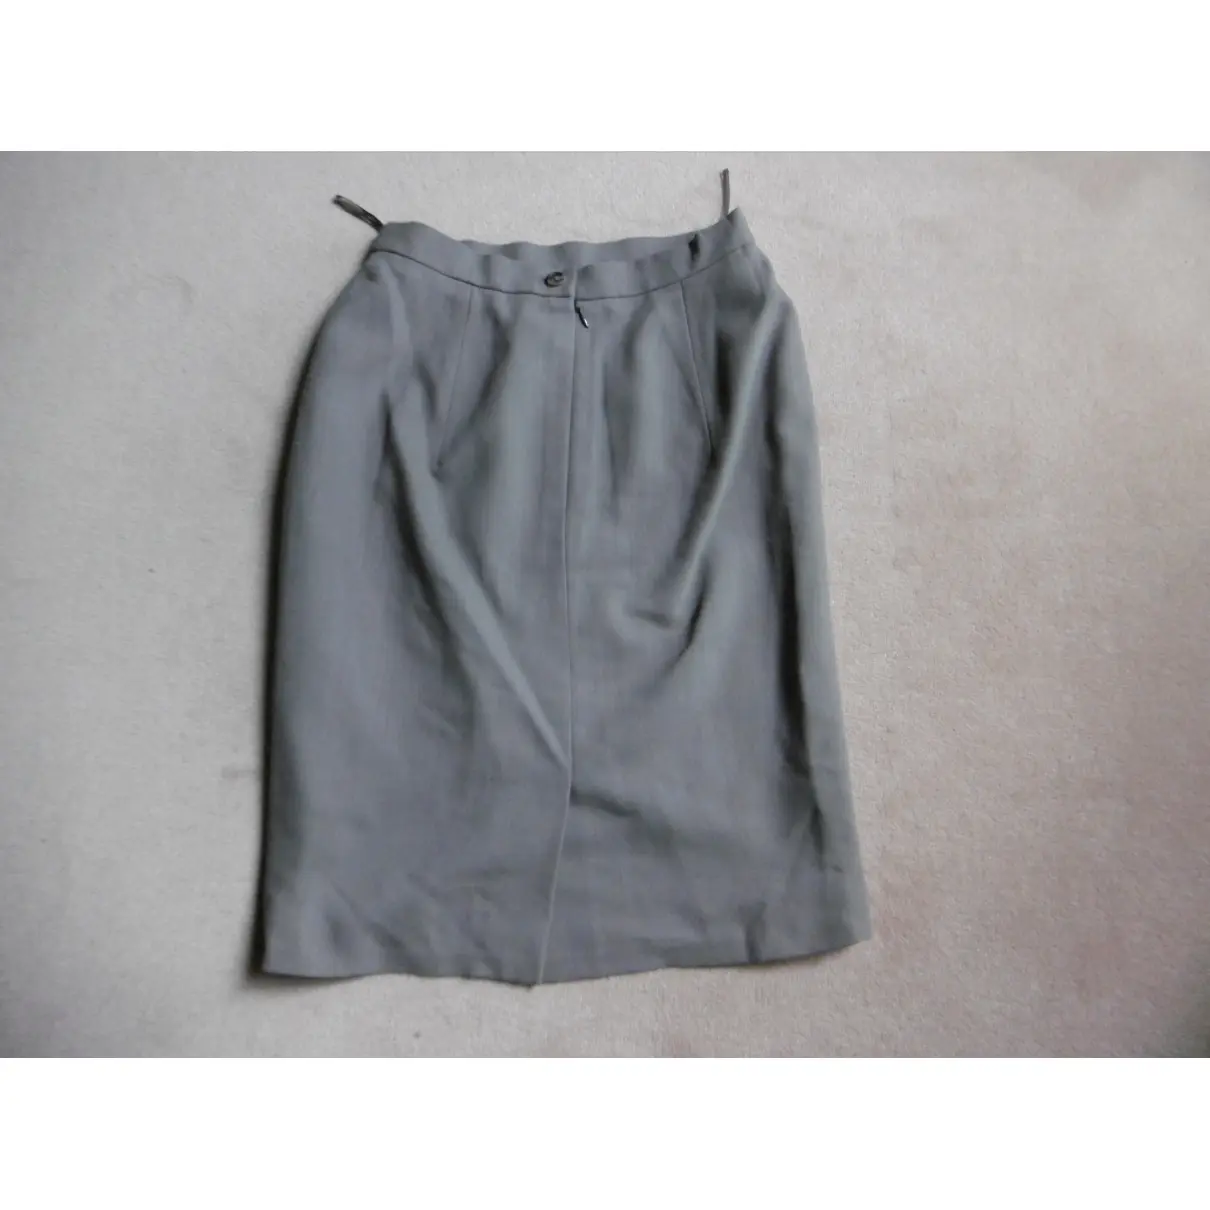 Cerruti Wool mid-length skirt for sale